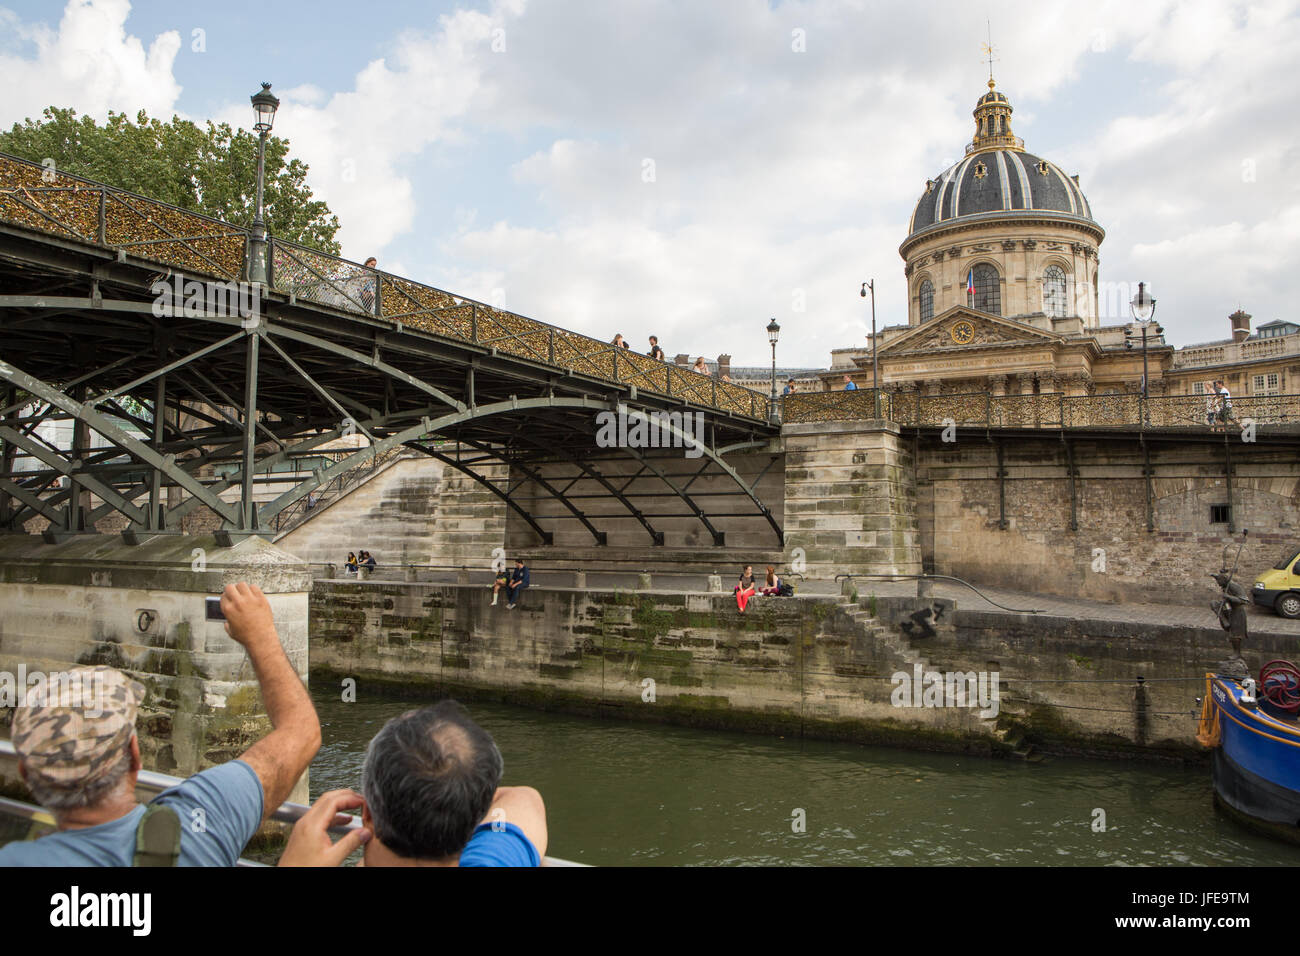 Les touristes voir l'Institut français et le Pont des Arts, ou l'amour Lock Bridge, à partir d'un bateau d'une croisière sur la Seine. Banque D'Images